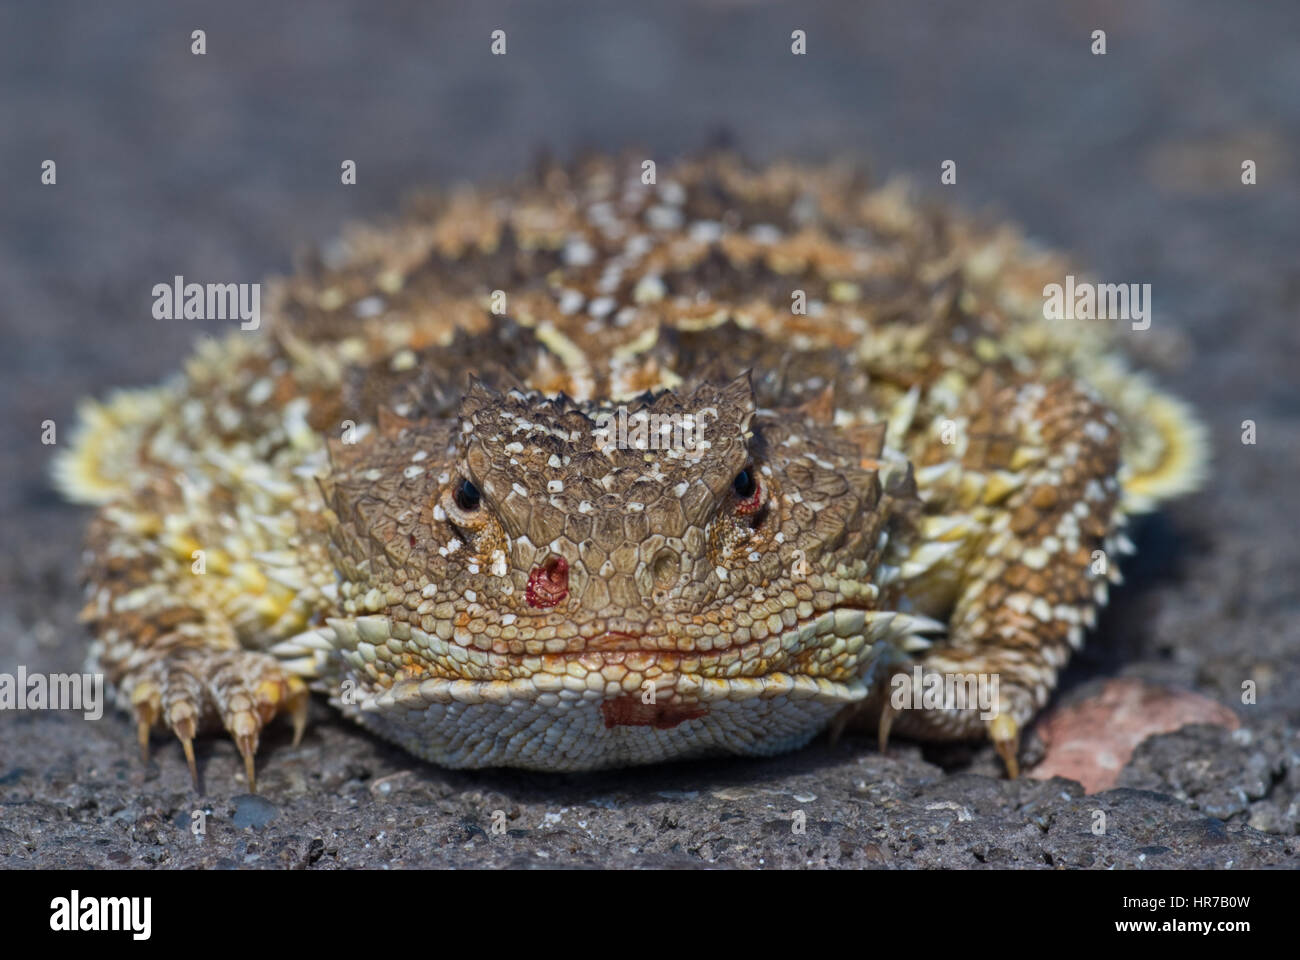 Maggiore corto-cornuto Lizard, sangue schizzare comportamento difensivo. Foto Stock